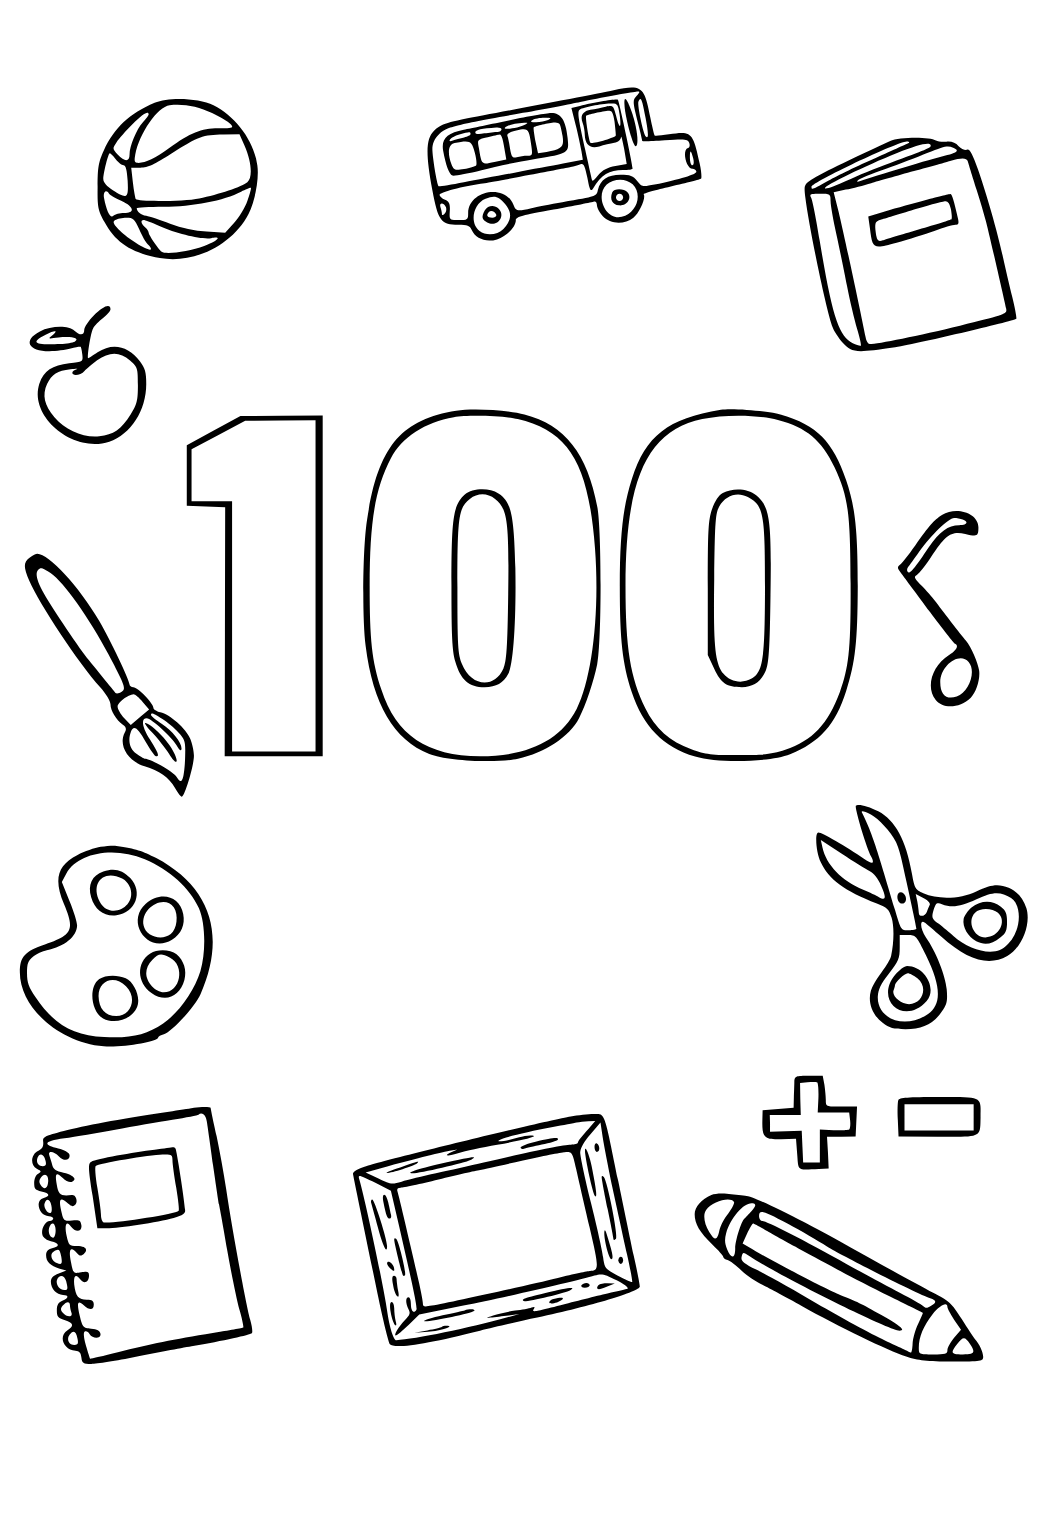 100 Desenhos para Adultos Colorir e Imprimir - Online Cursos Gratuitos